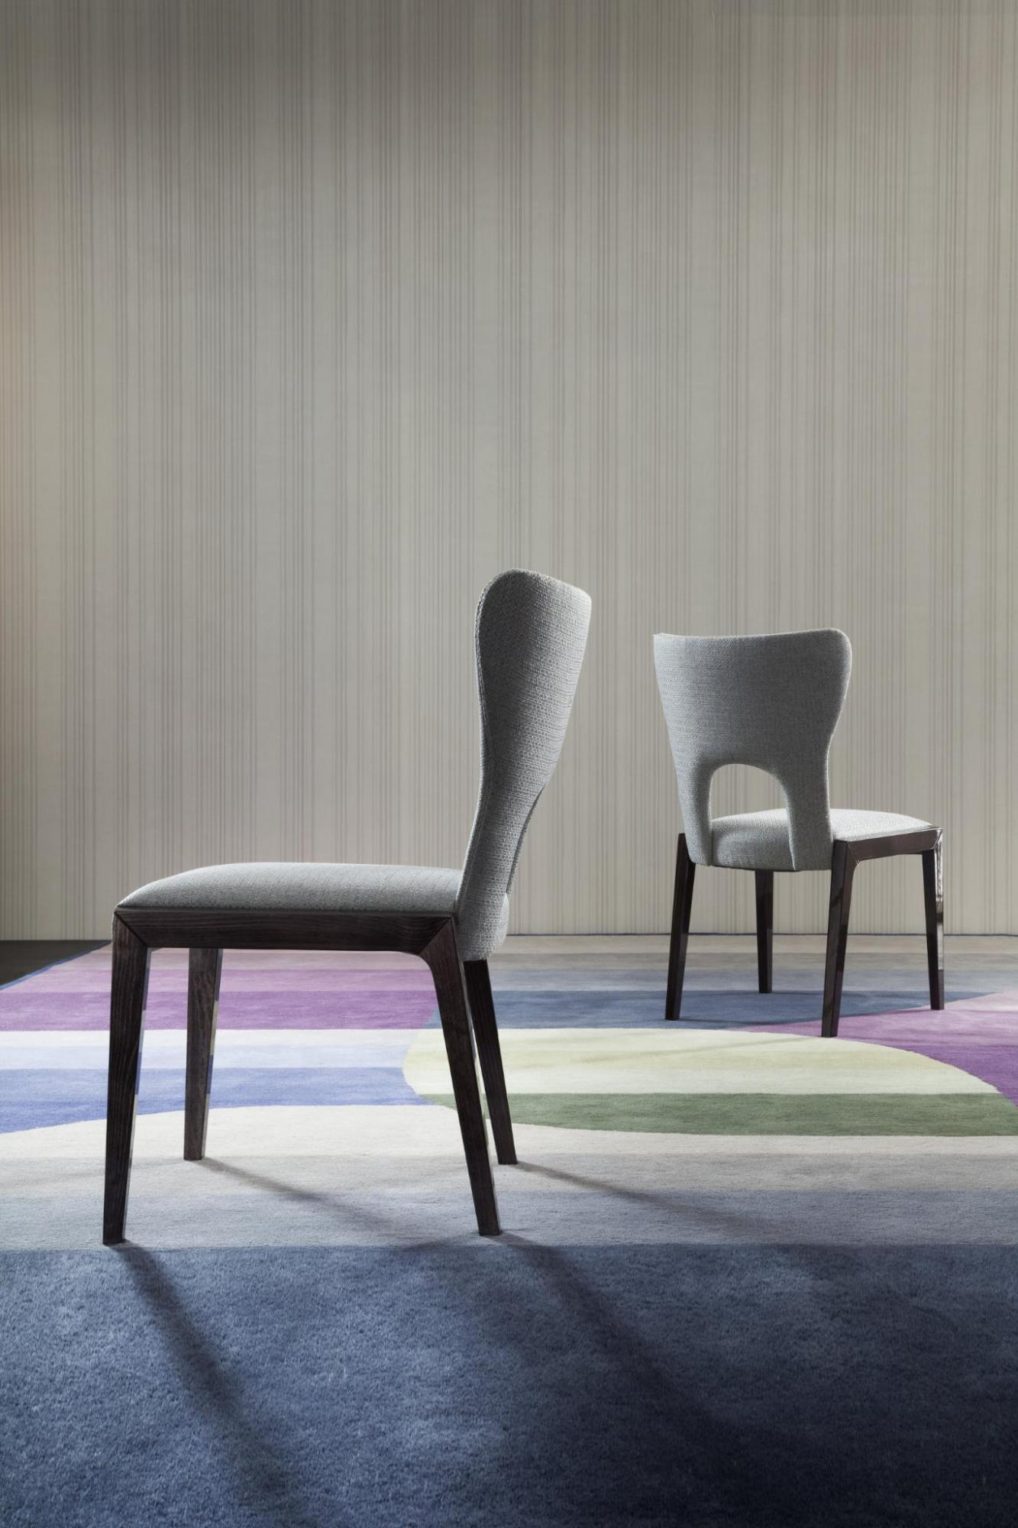 意大利家具costantinipietro的chairs-Shape 餐椅 主图